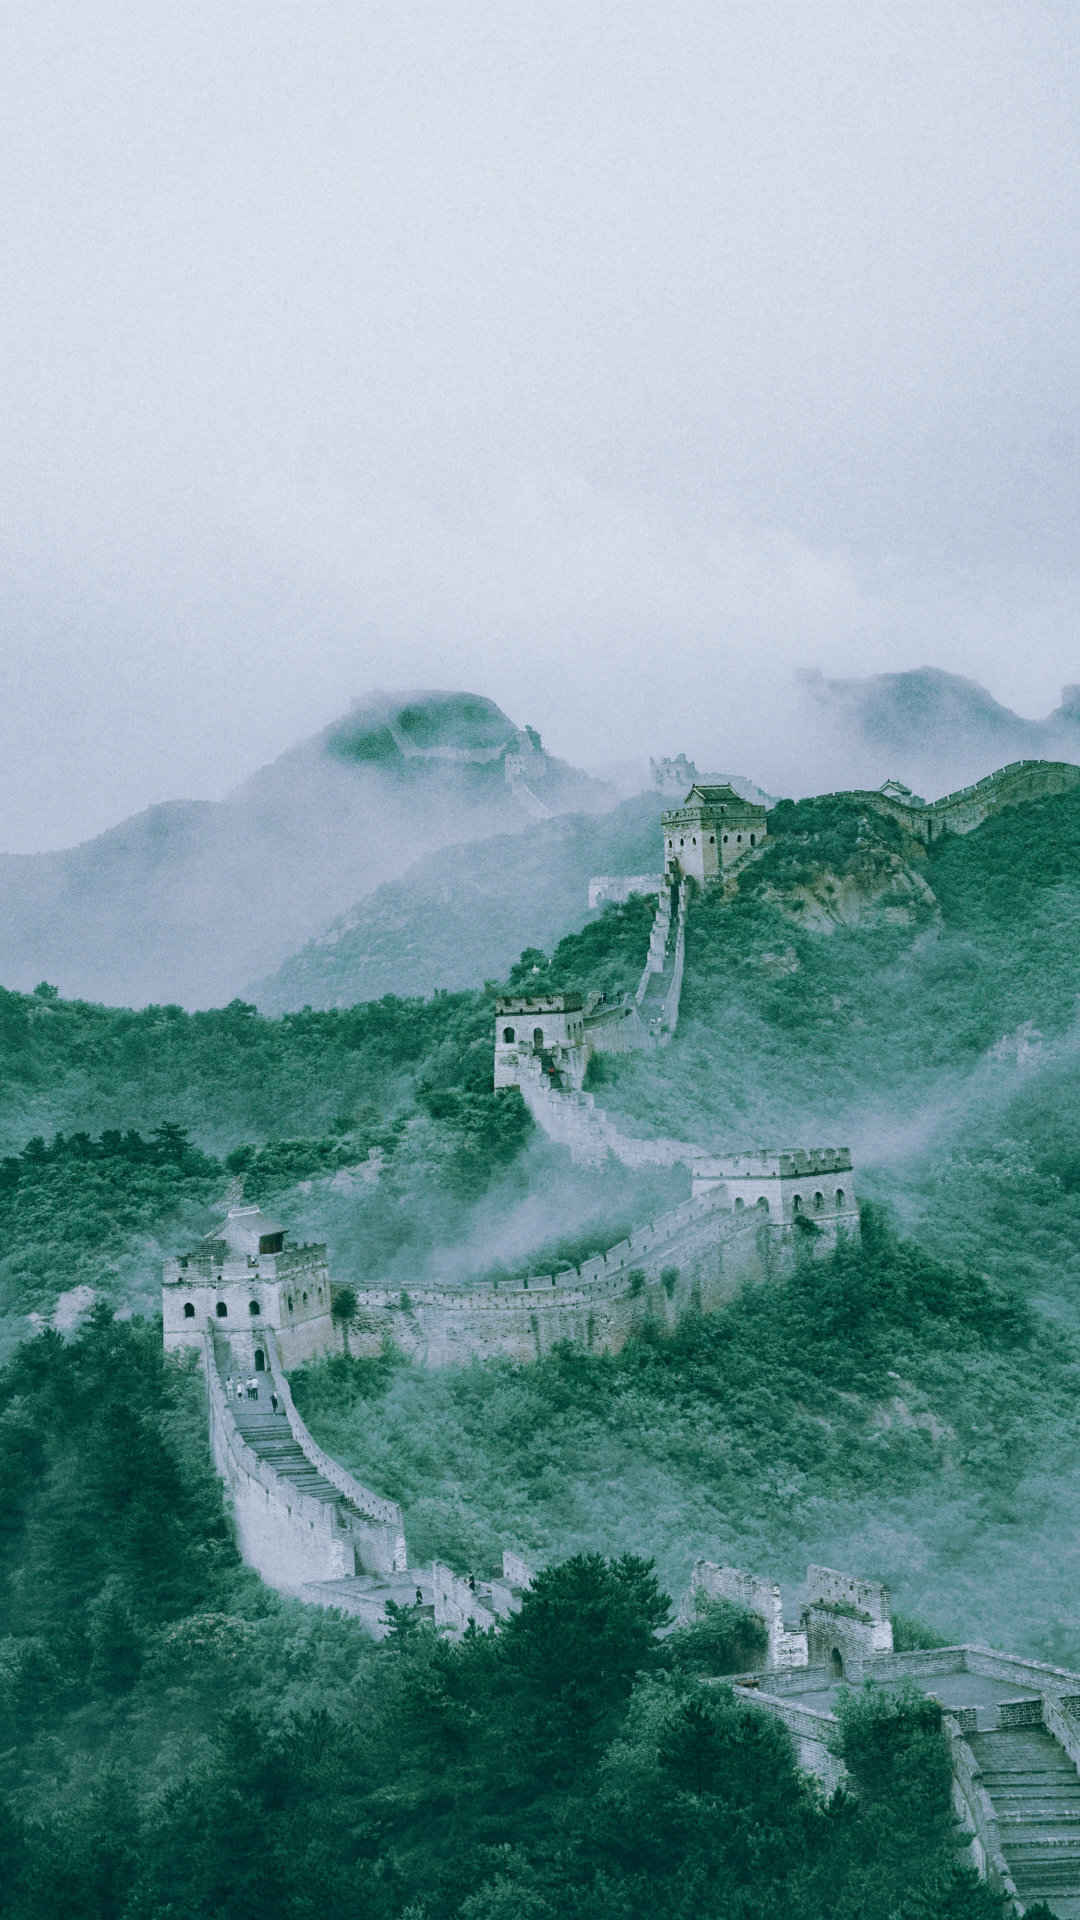 中国著名古建筑长城的风景手机壁纸-